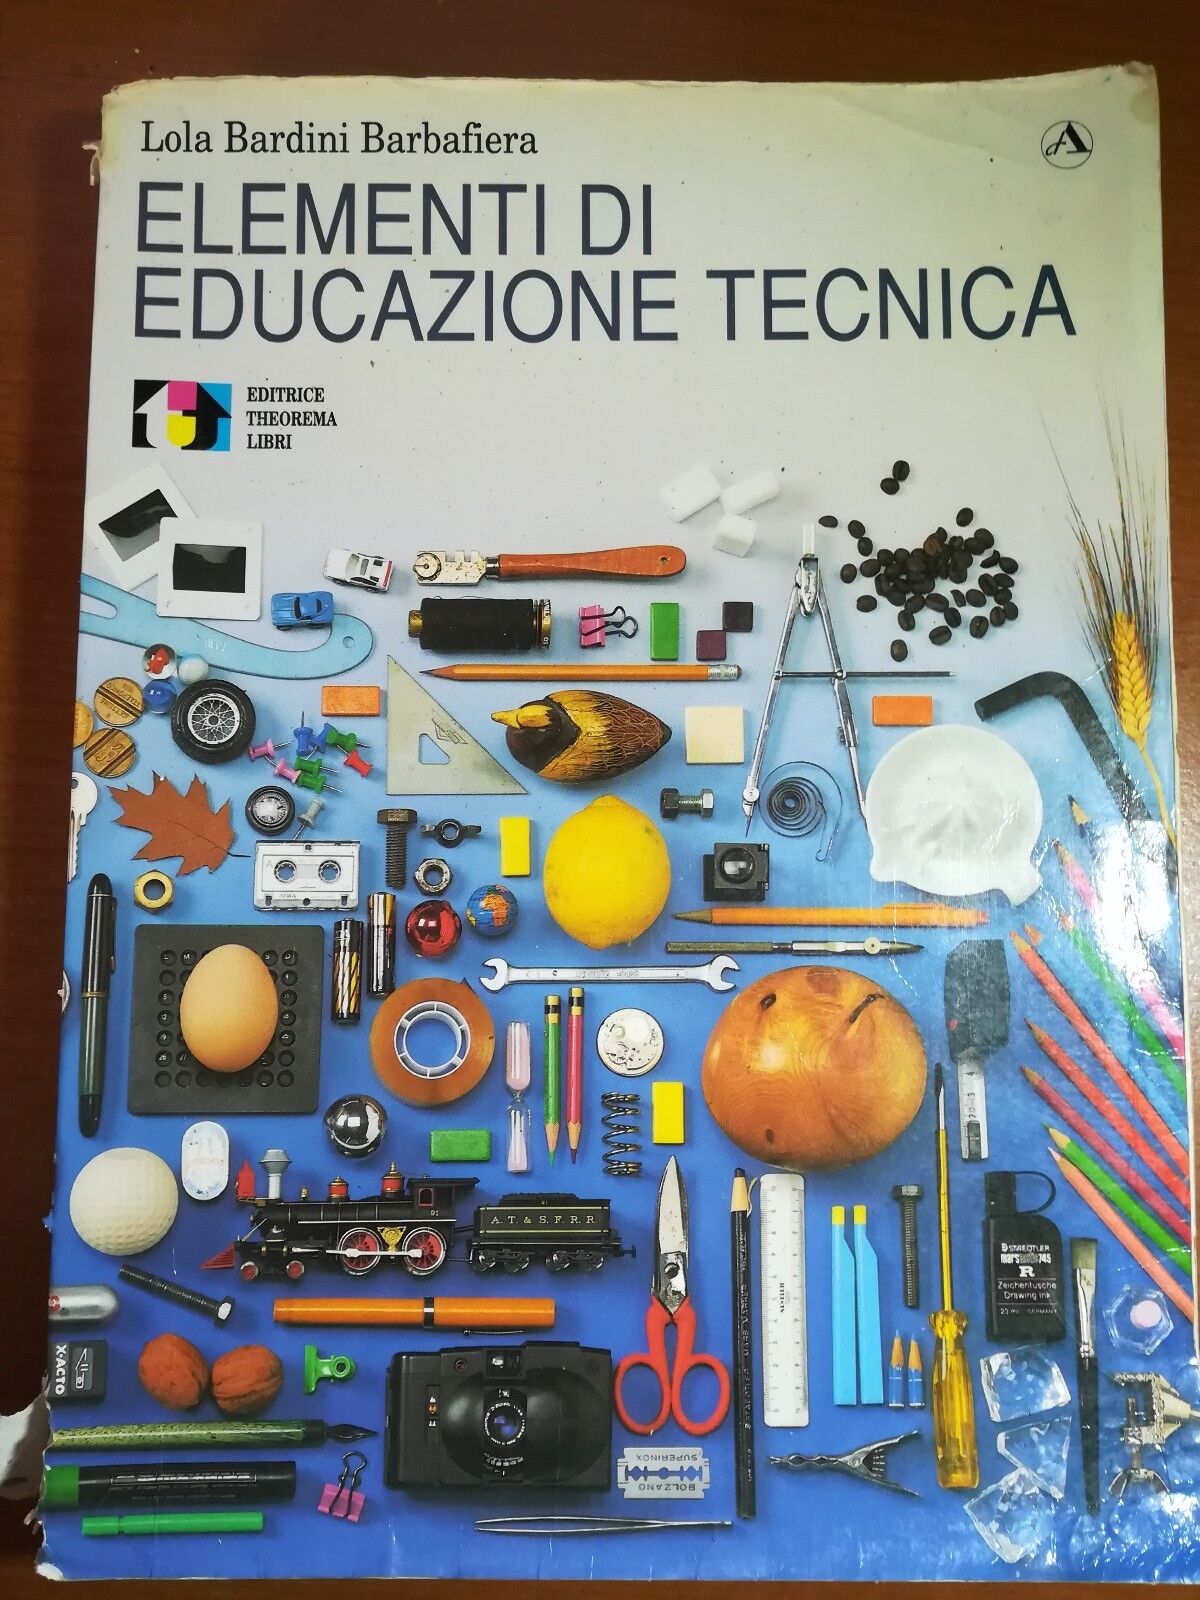 Elementi di educazione tecnica - Lola Barini Barbafiera - Theorema - 1991 - M